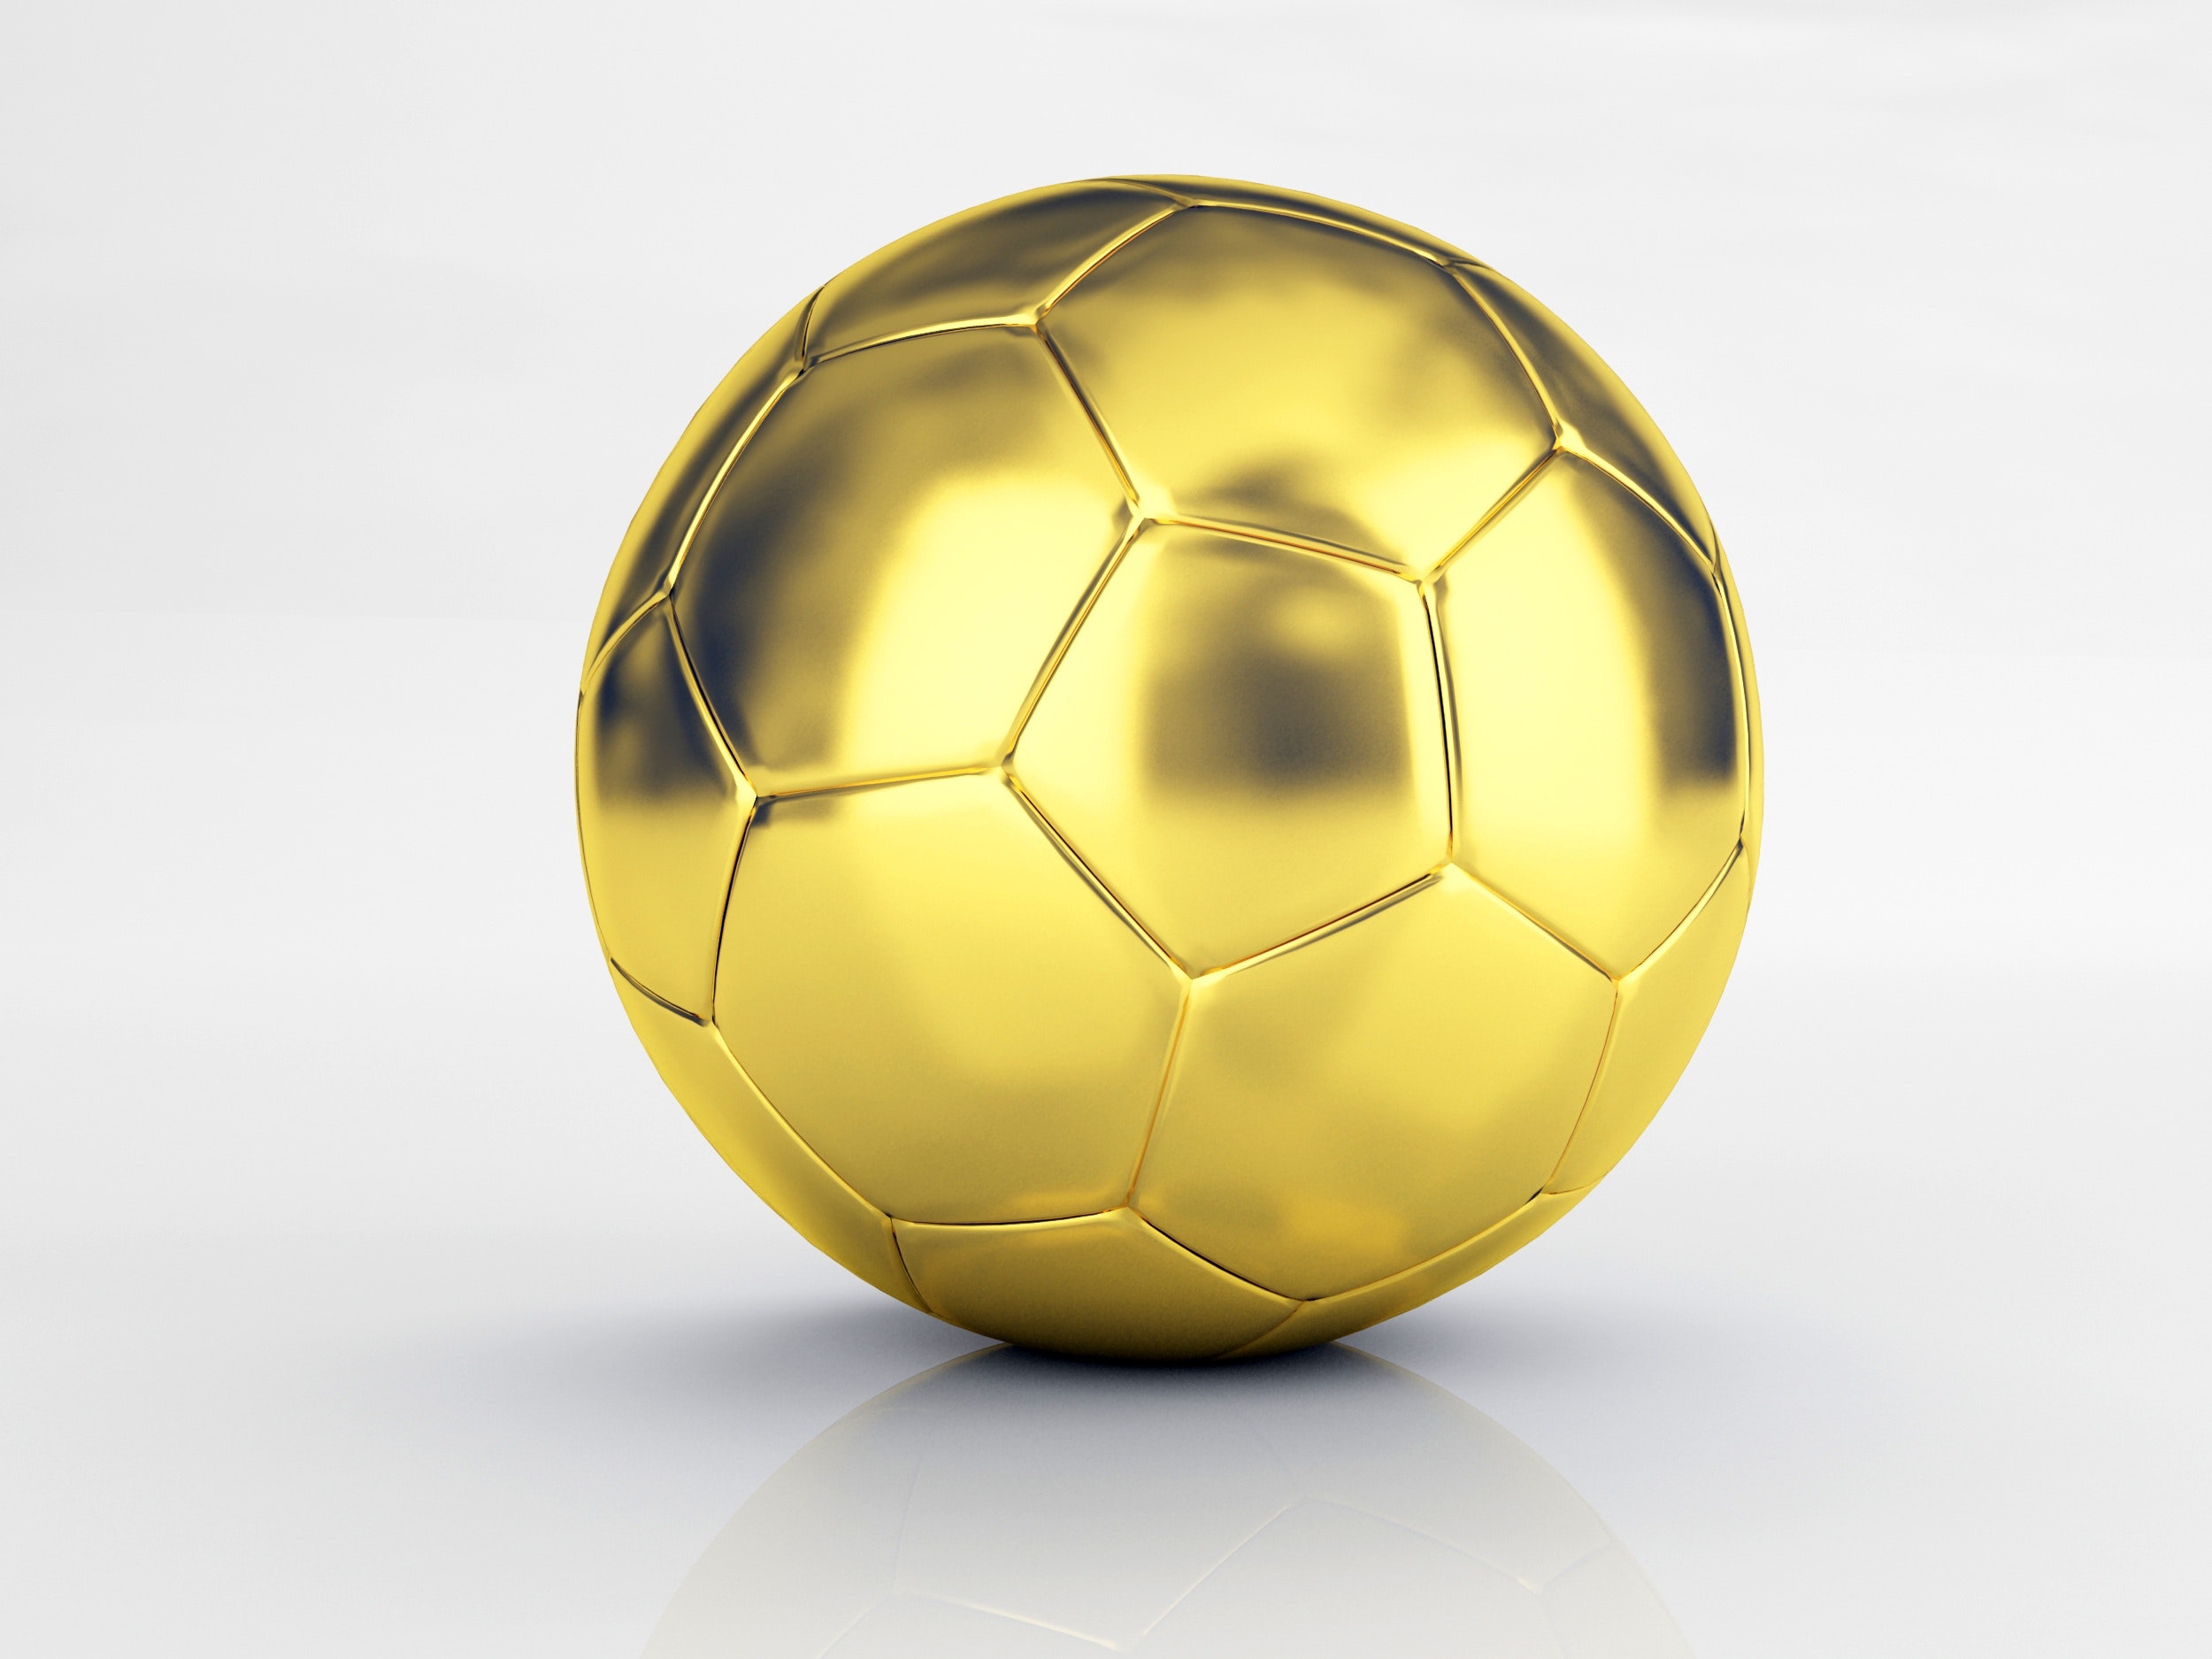 Gold Soccer Ball Transparent - HD Wallpaper 